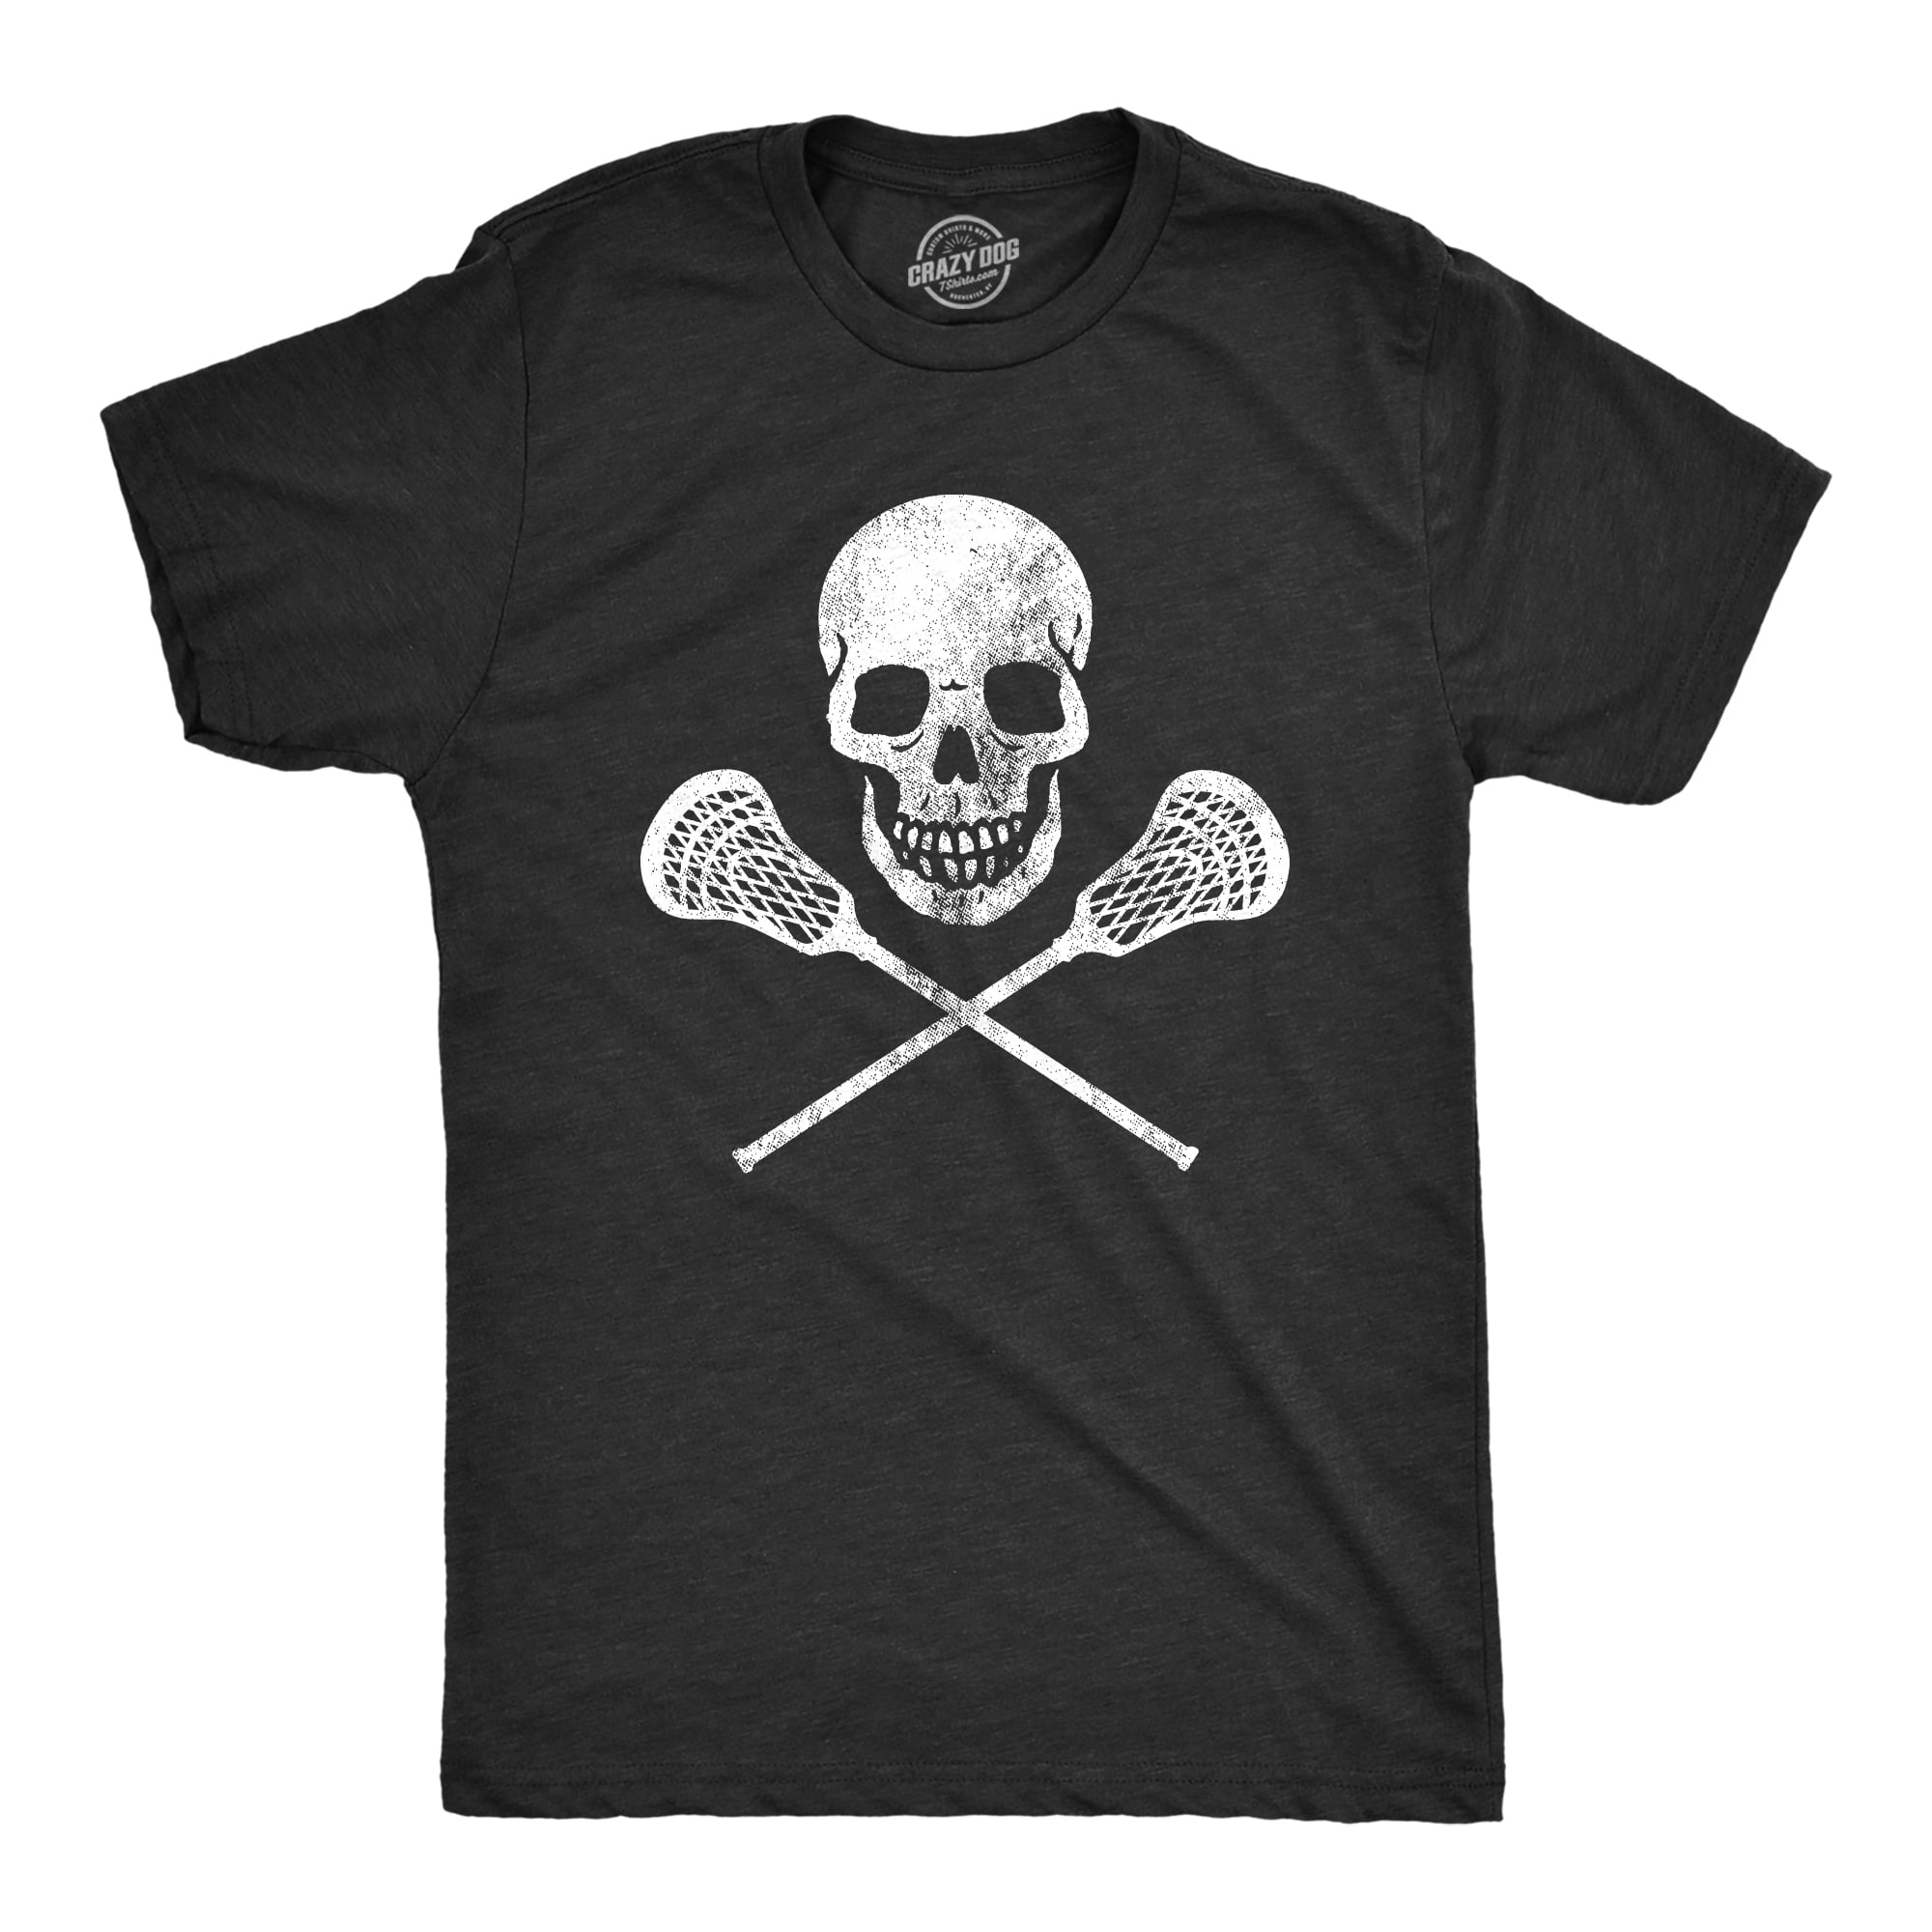 Mens Lacrosse Skull Tshirt Funny Lax Sports Skull And Crossbones ...